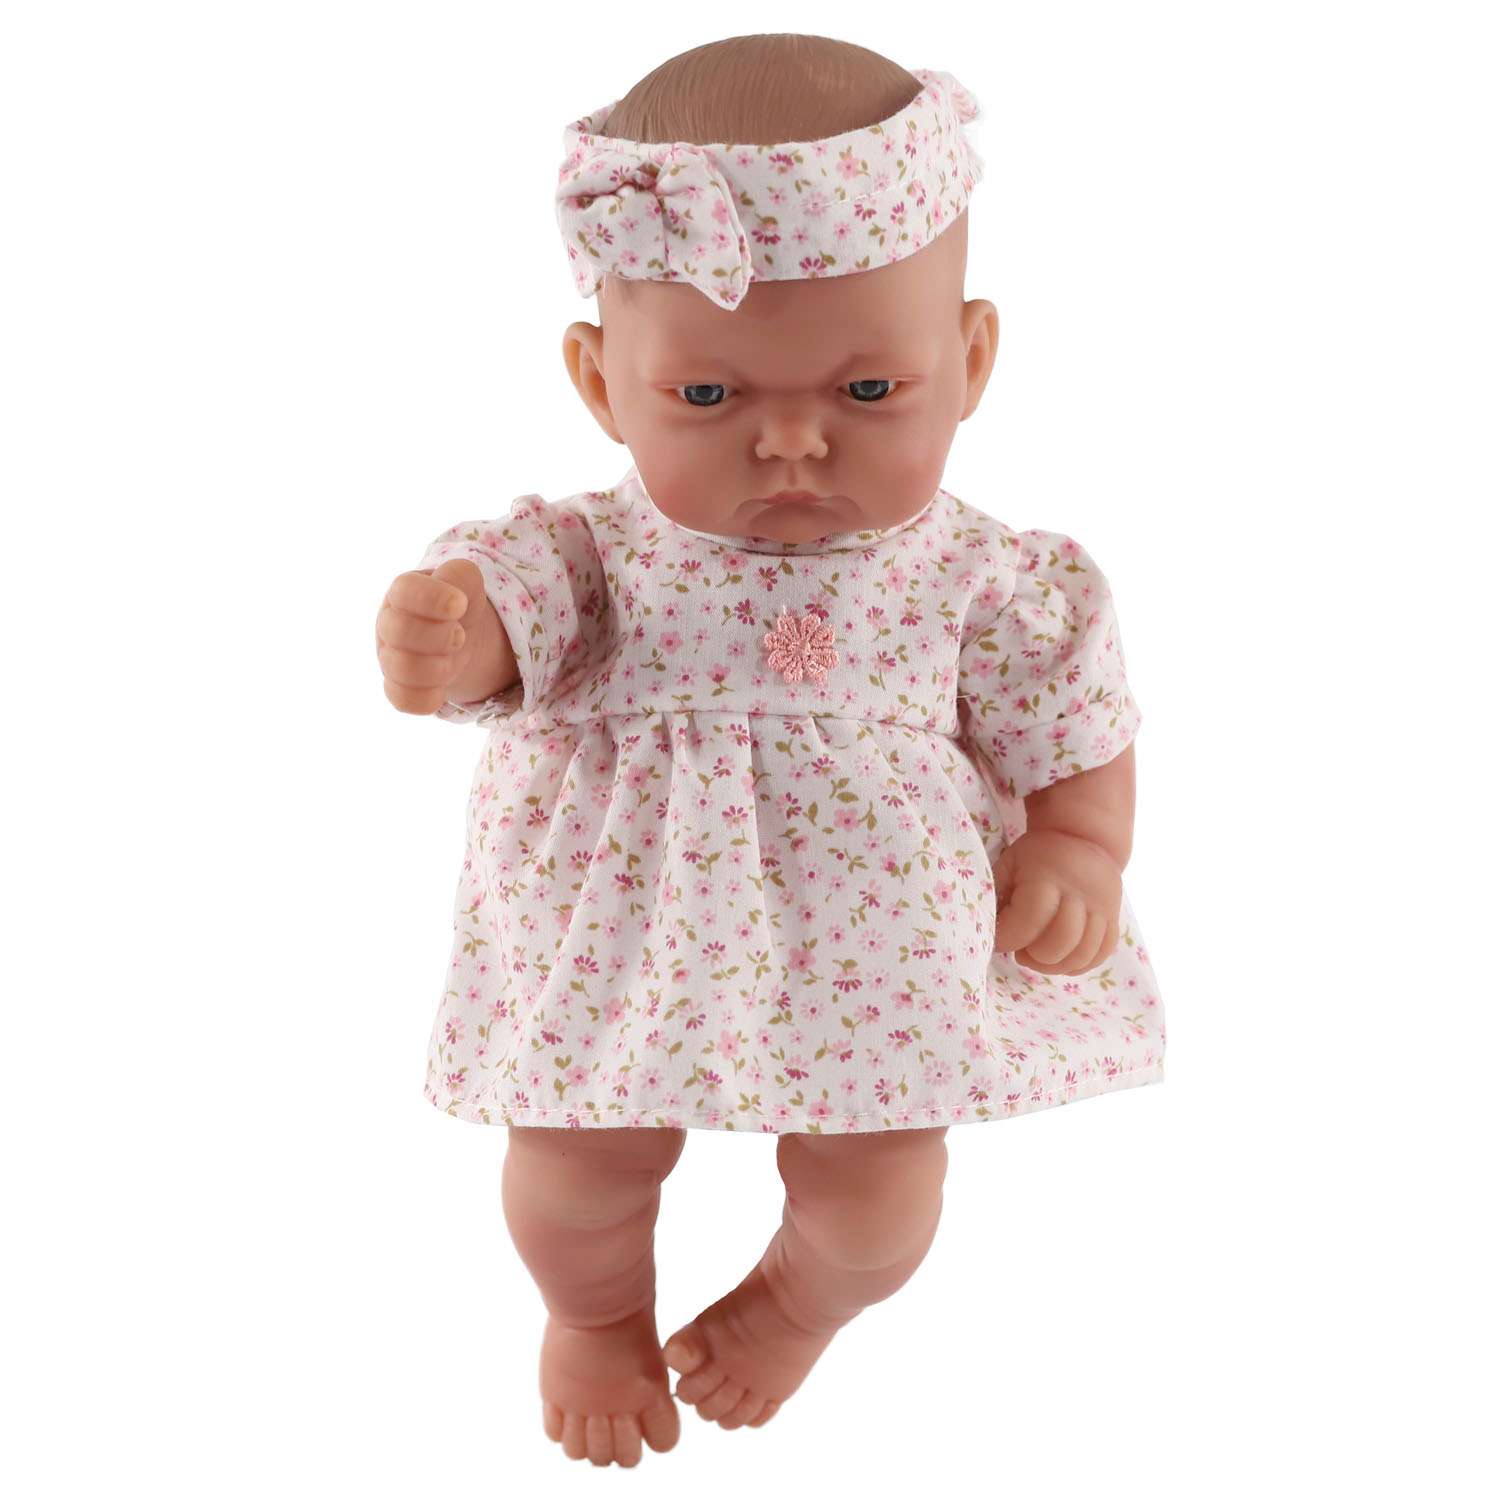 Кукла-пупс Antonio Juan Вера в розовой люльке 26 см виниловая 4076P - фото 2